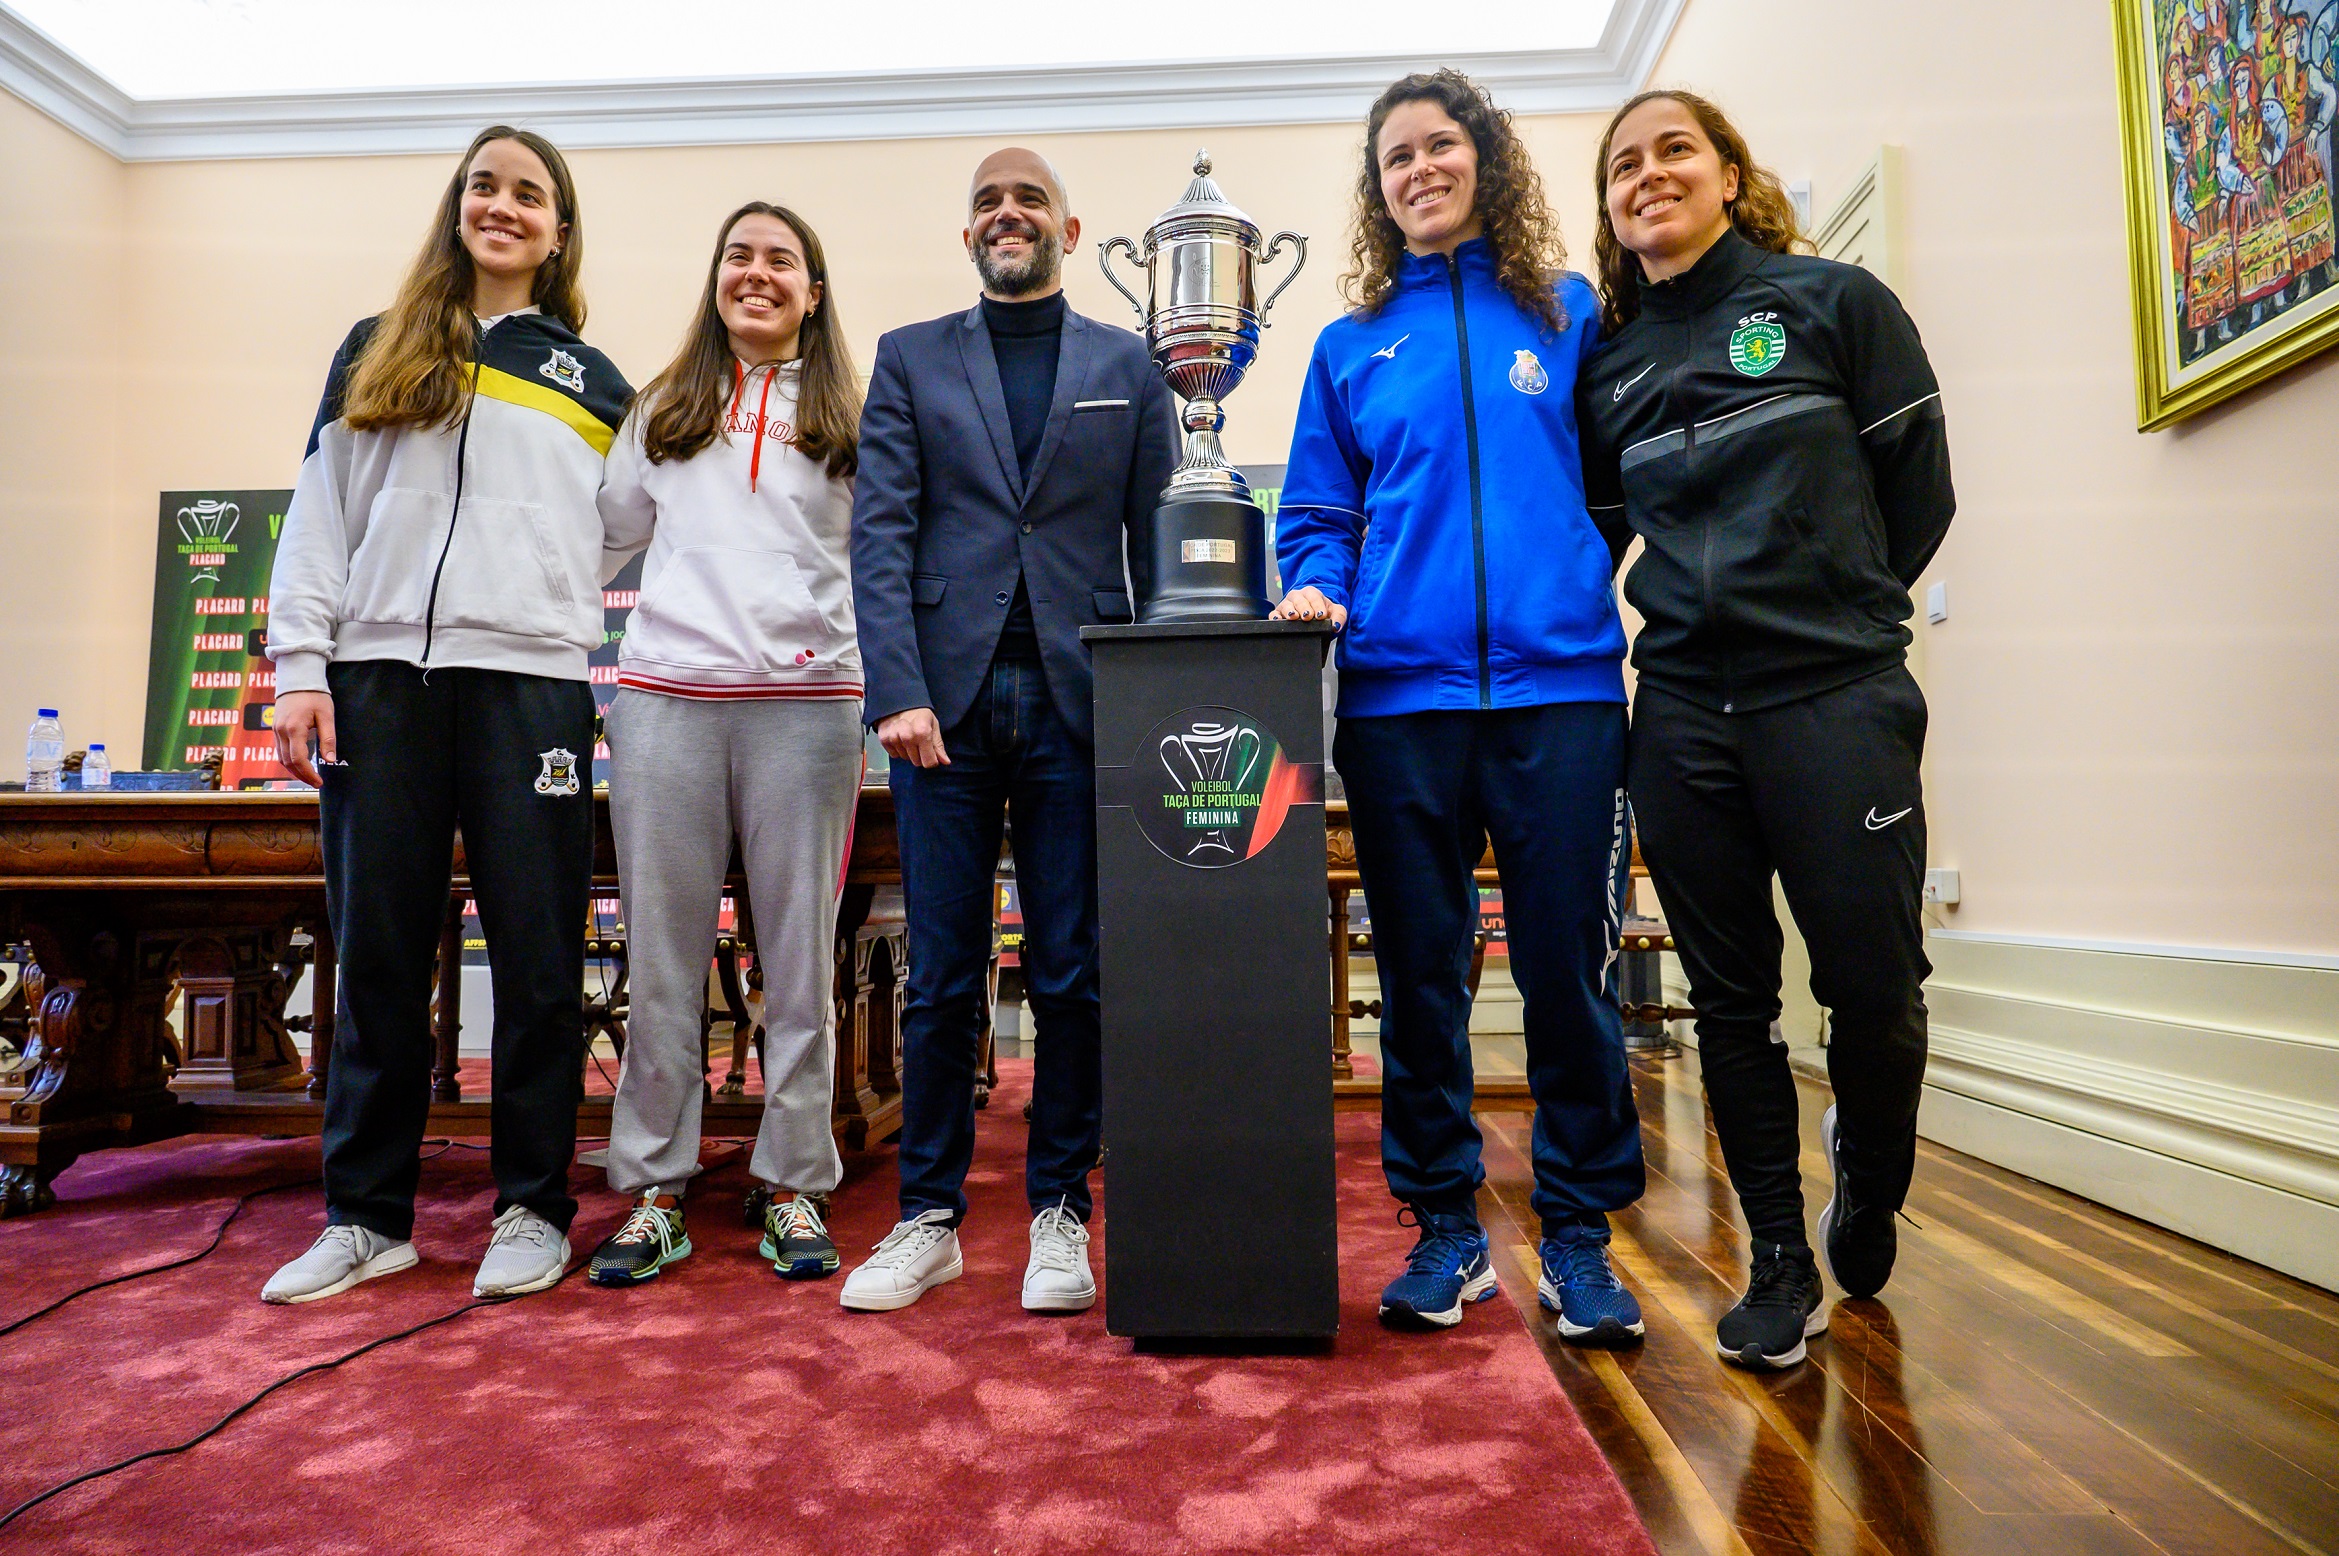 EUROPEU DE SENIORES FEMININOS - Federação Portuguesa de Voleibol